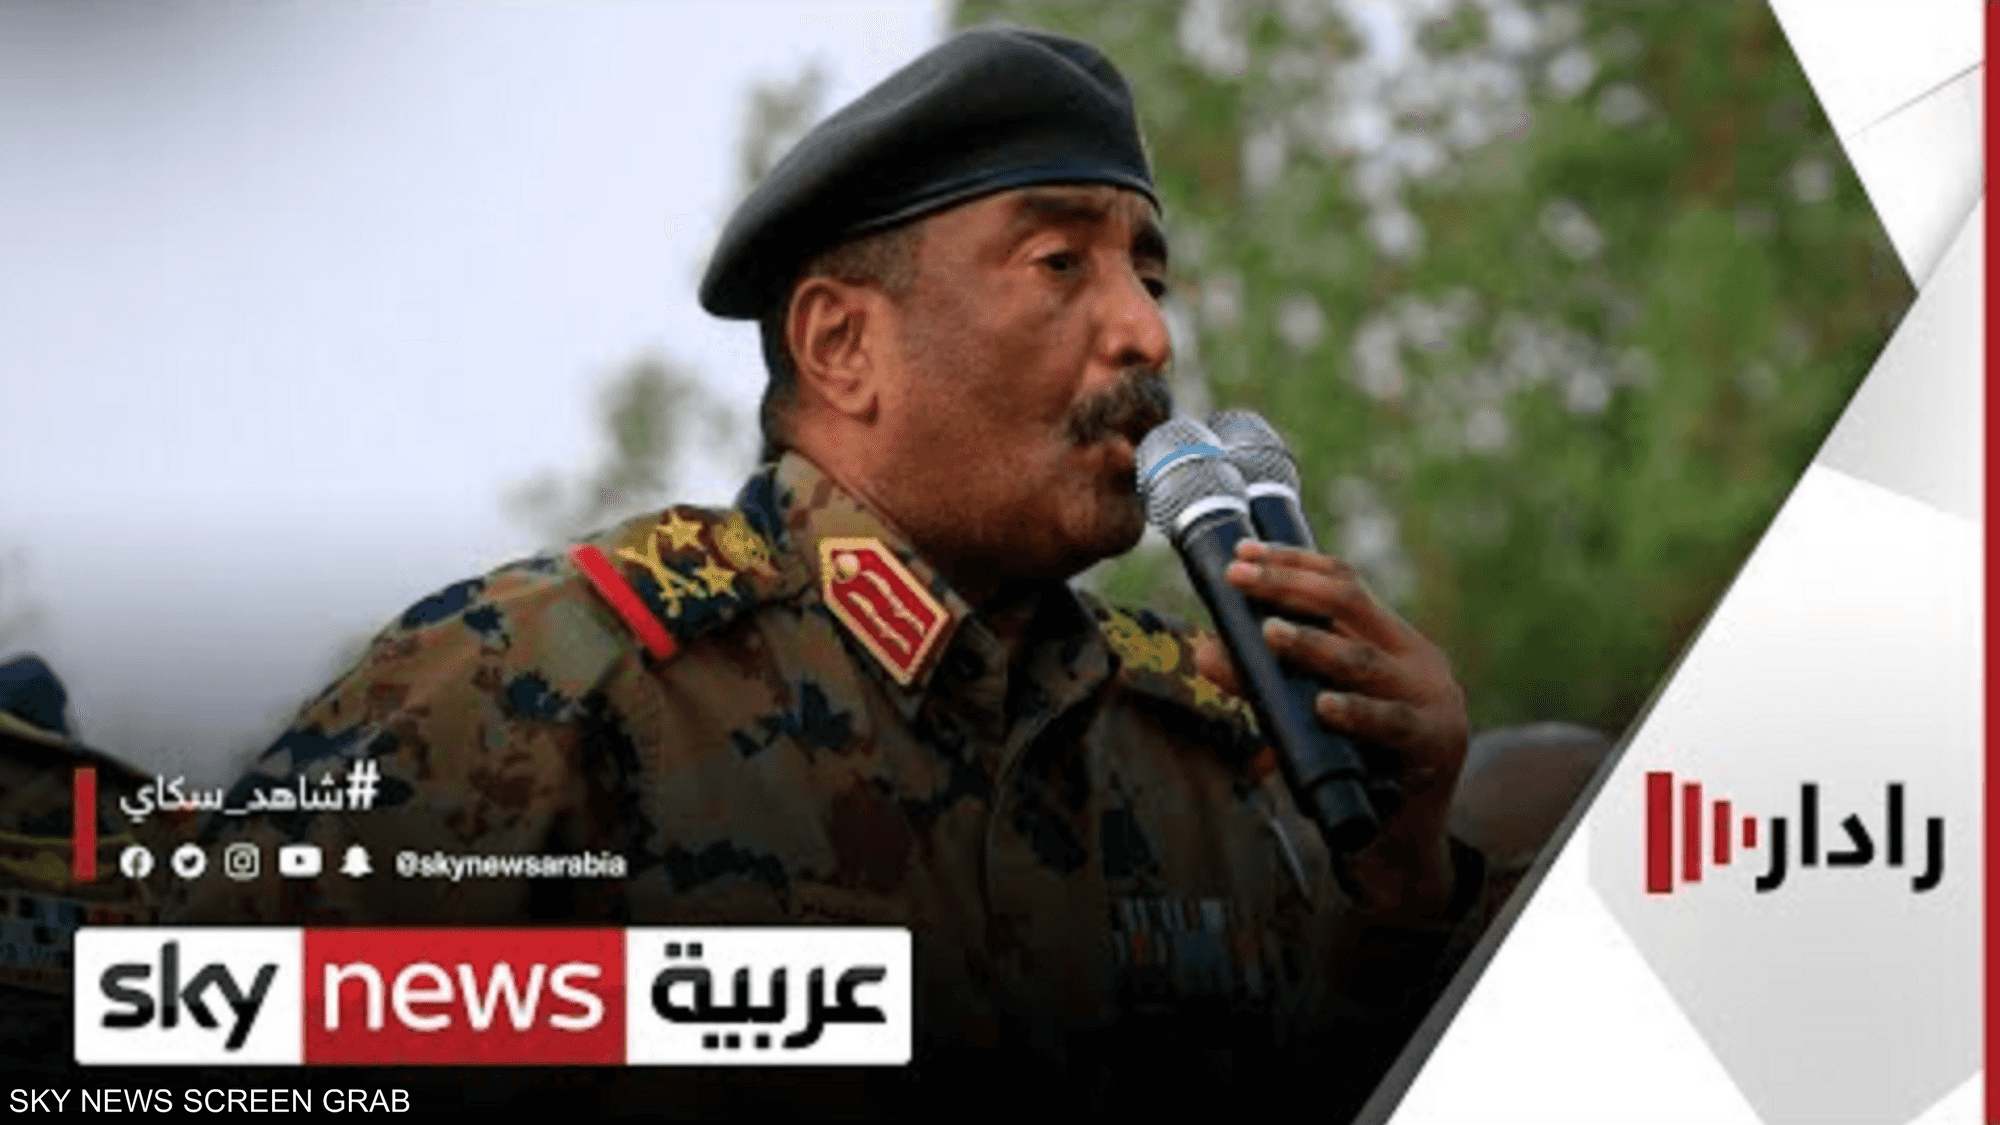 البرهان يعلن أن الجيش سيترك الساحة السياسية بعد الانتخابات